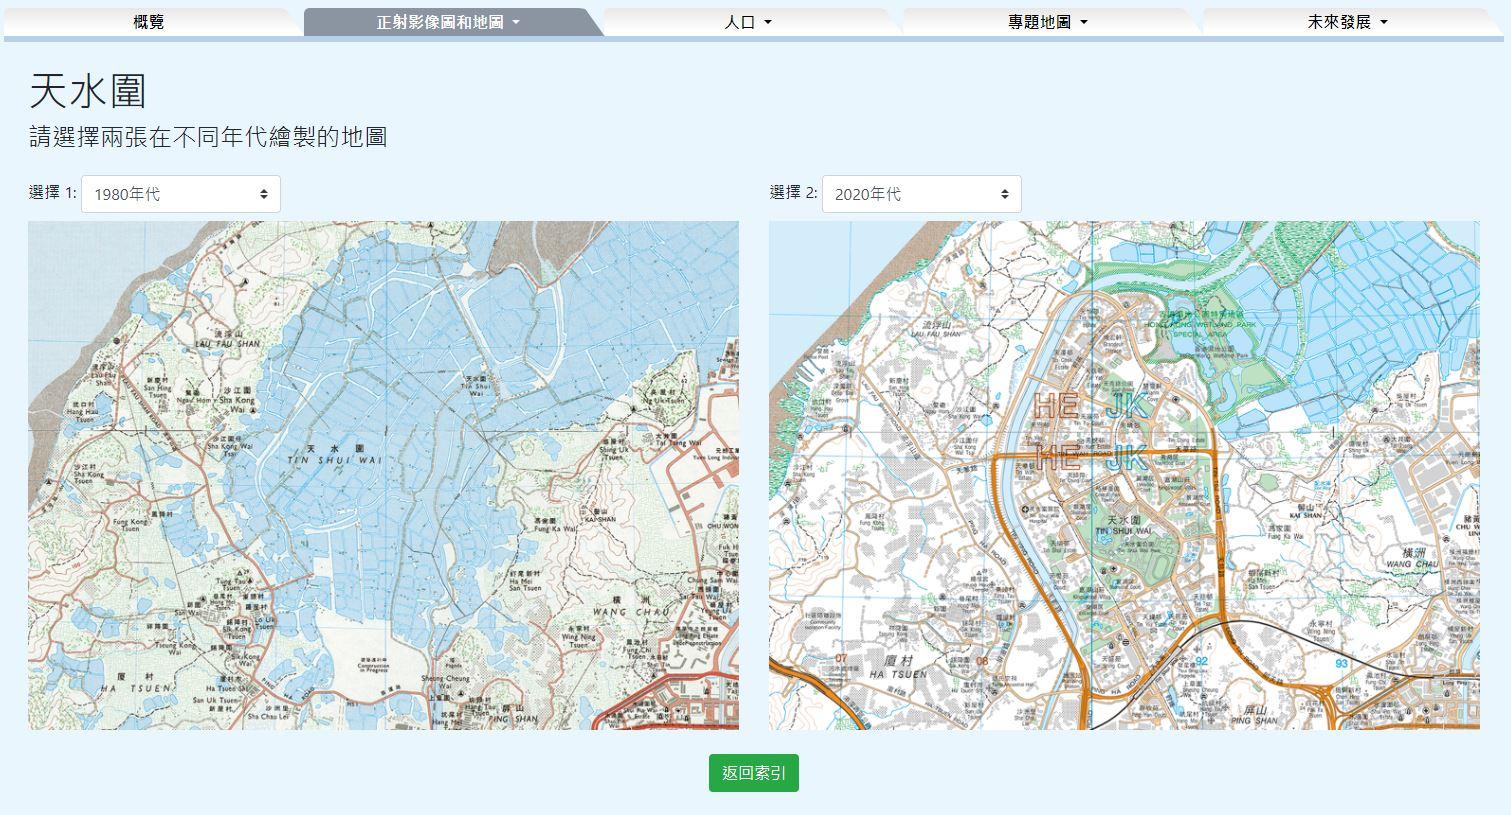 二○二四年《e香港街》今日（一月二十四日）起可免费下载。全新的互动故事地图展示香港北部都会区三个新市镇的地貌变化。